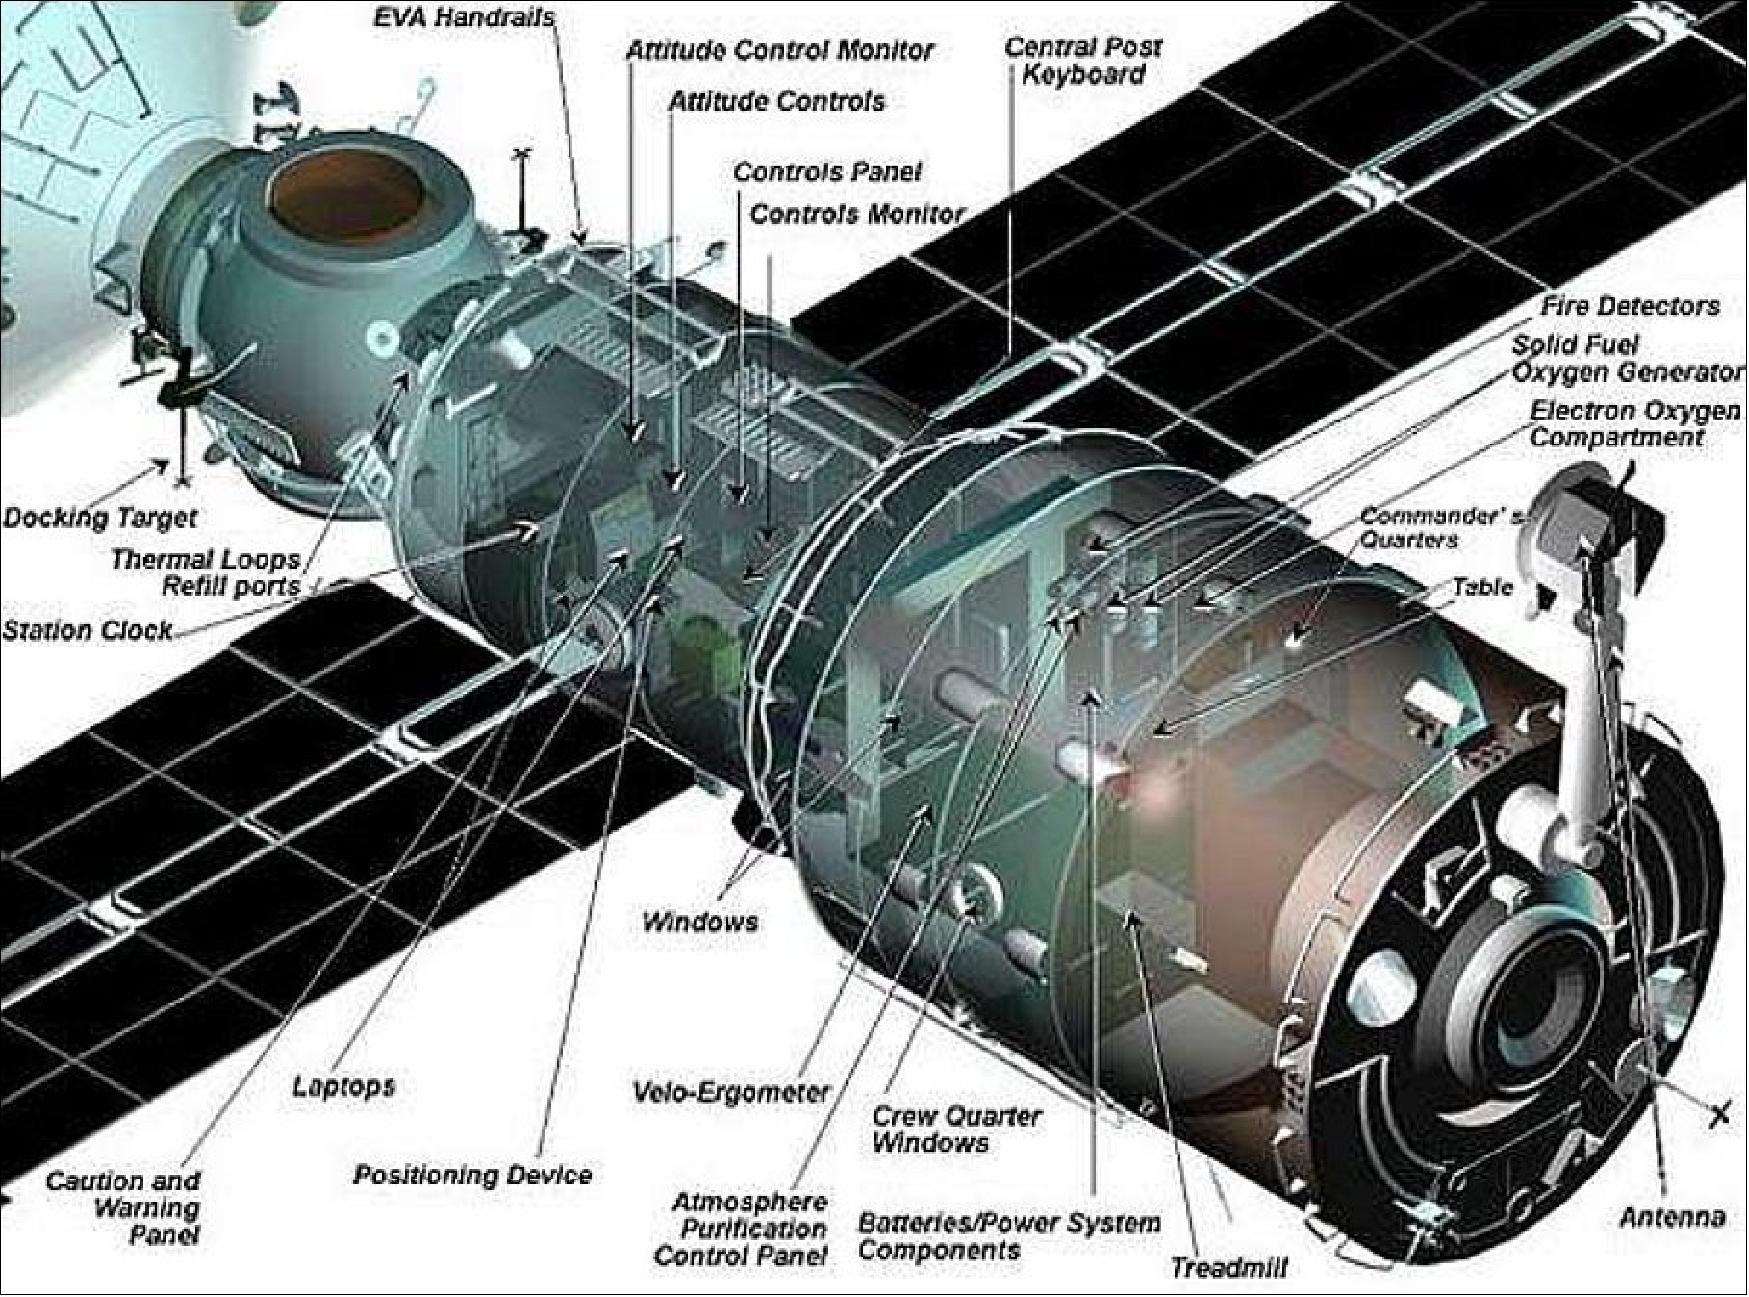 Figure 11: Illustration of the Zvezda module (image credit: Roscosmos)